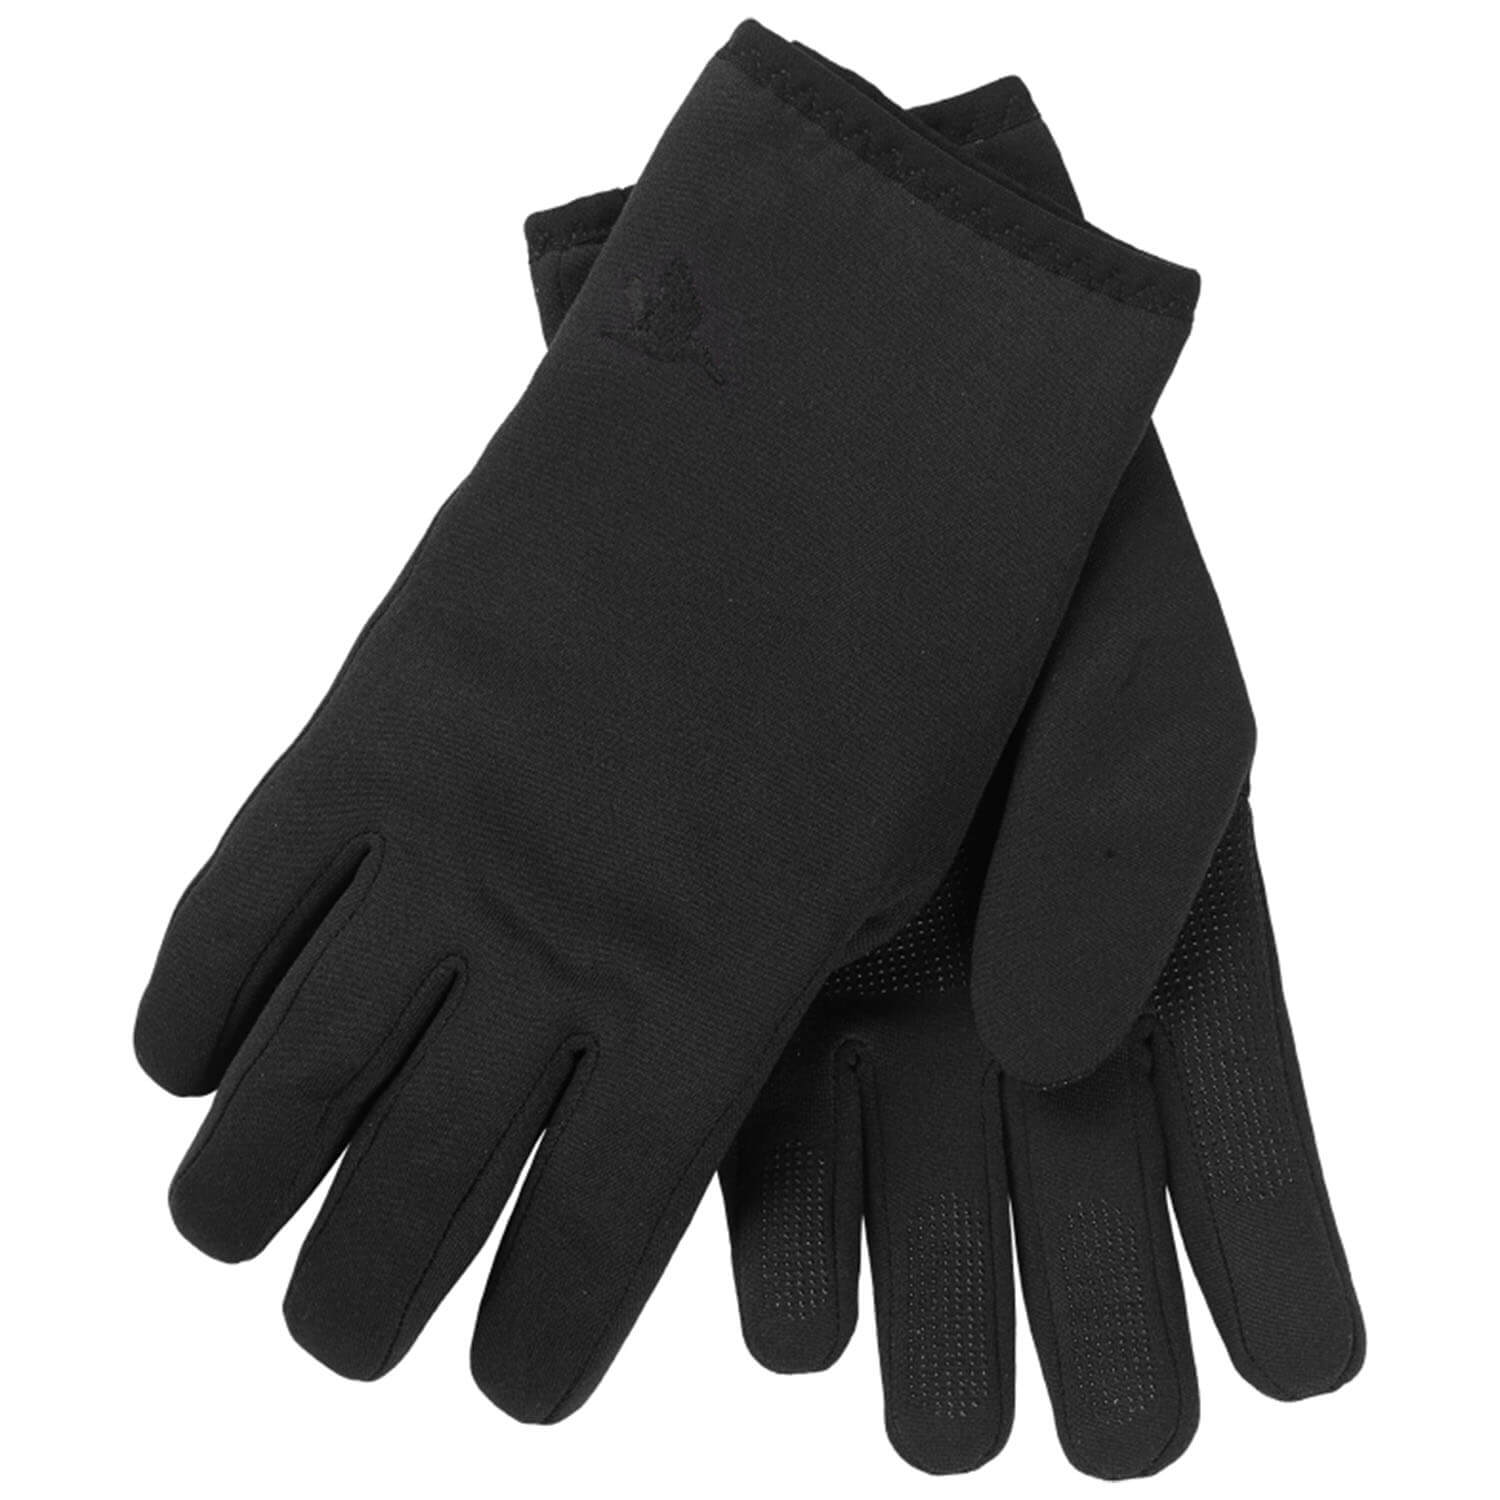 Seeland gloves Hawker WP (Meteorite) - Hunting Gloves